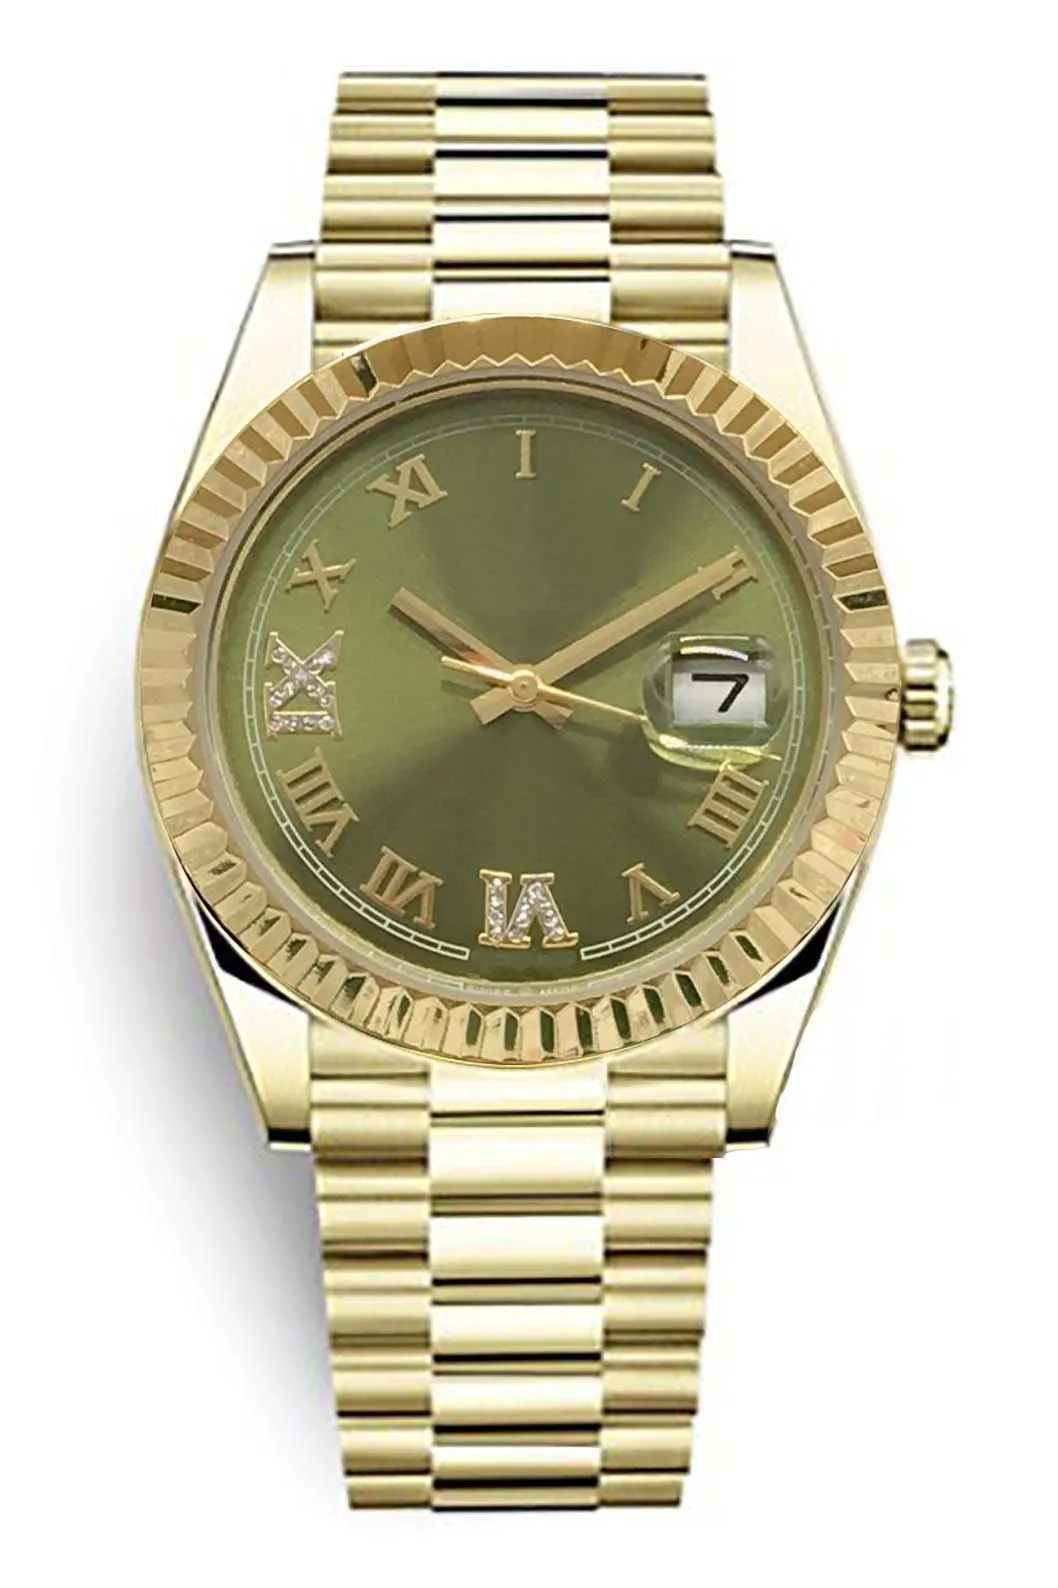 Авторские автоматические женские часы, роскошный модный циферблат, качество AAA+, раскладывающаяся застежка, водонепроницаемое, сапфировое стекло, устойчивое к царапинам, звездный бизнес-выбор